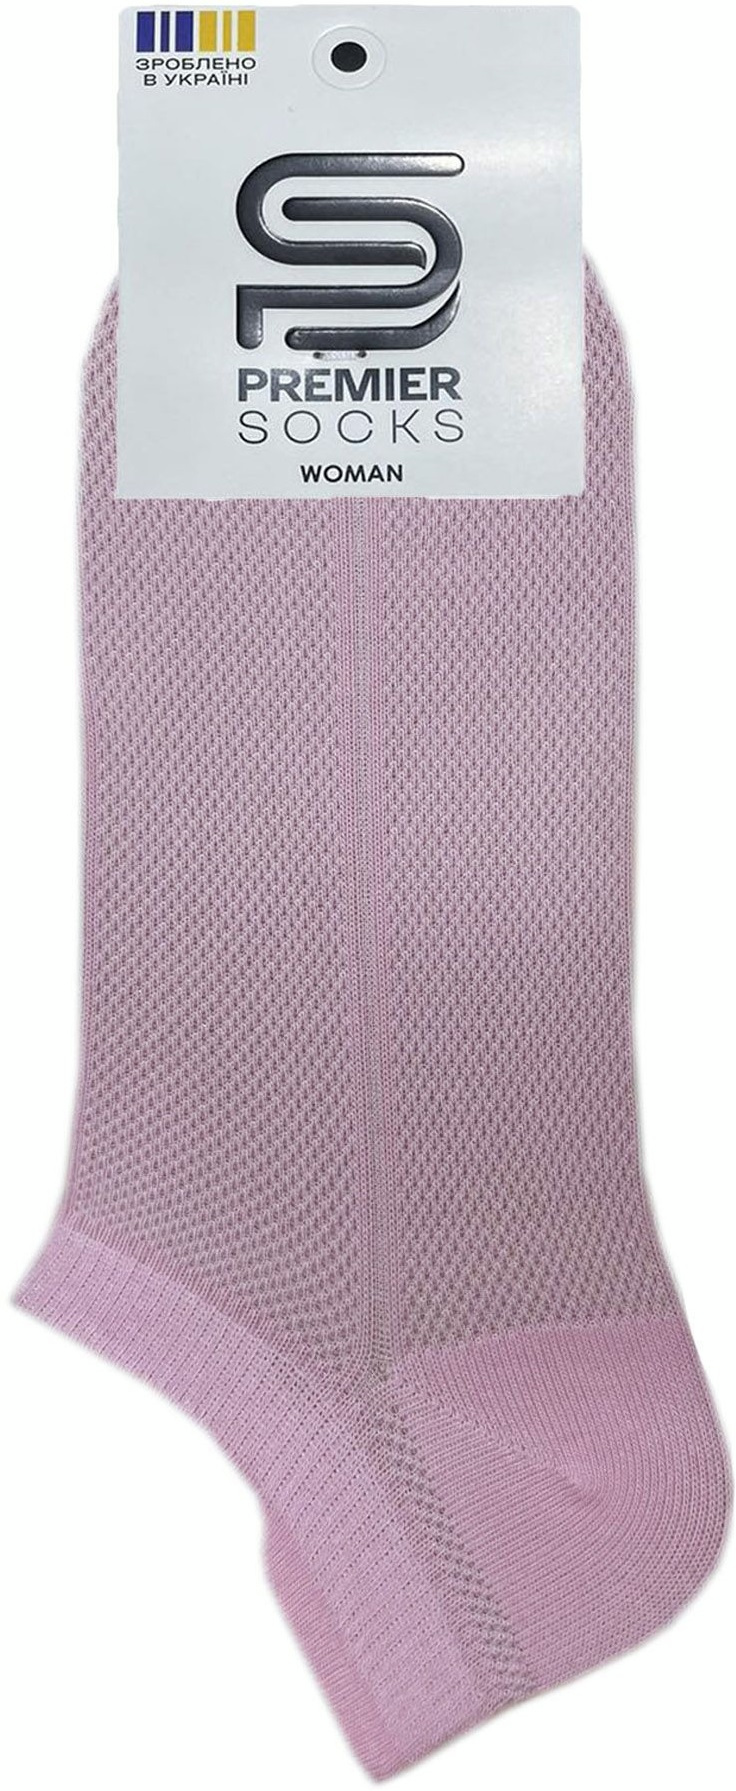 Носки женские Premier Socks 36-40 1 пара розовые (4820163318776) фото 2